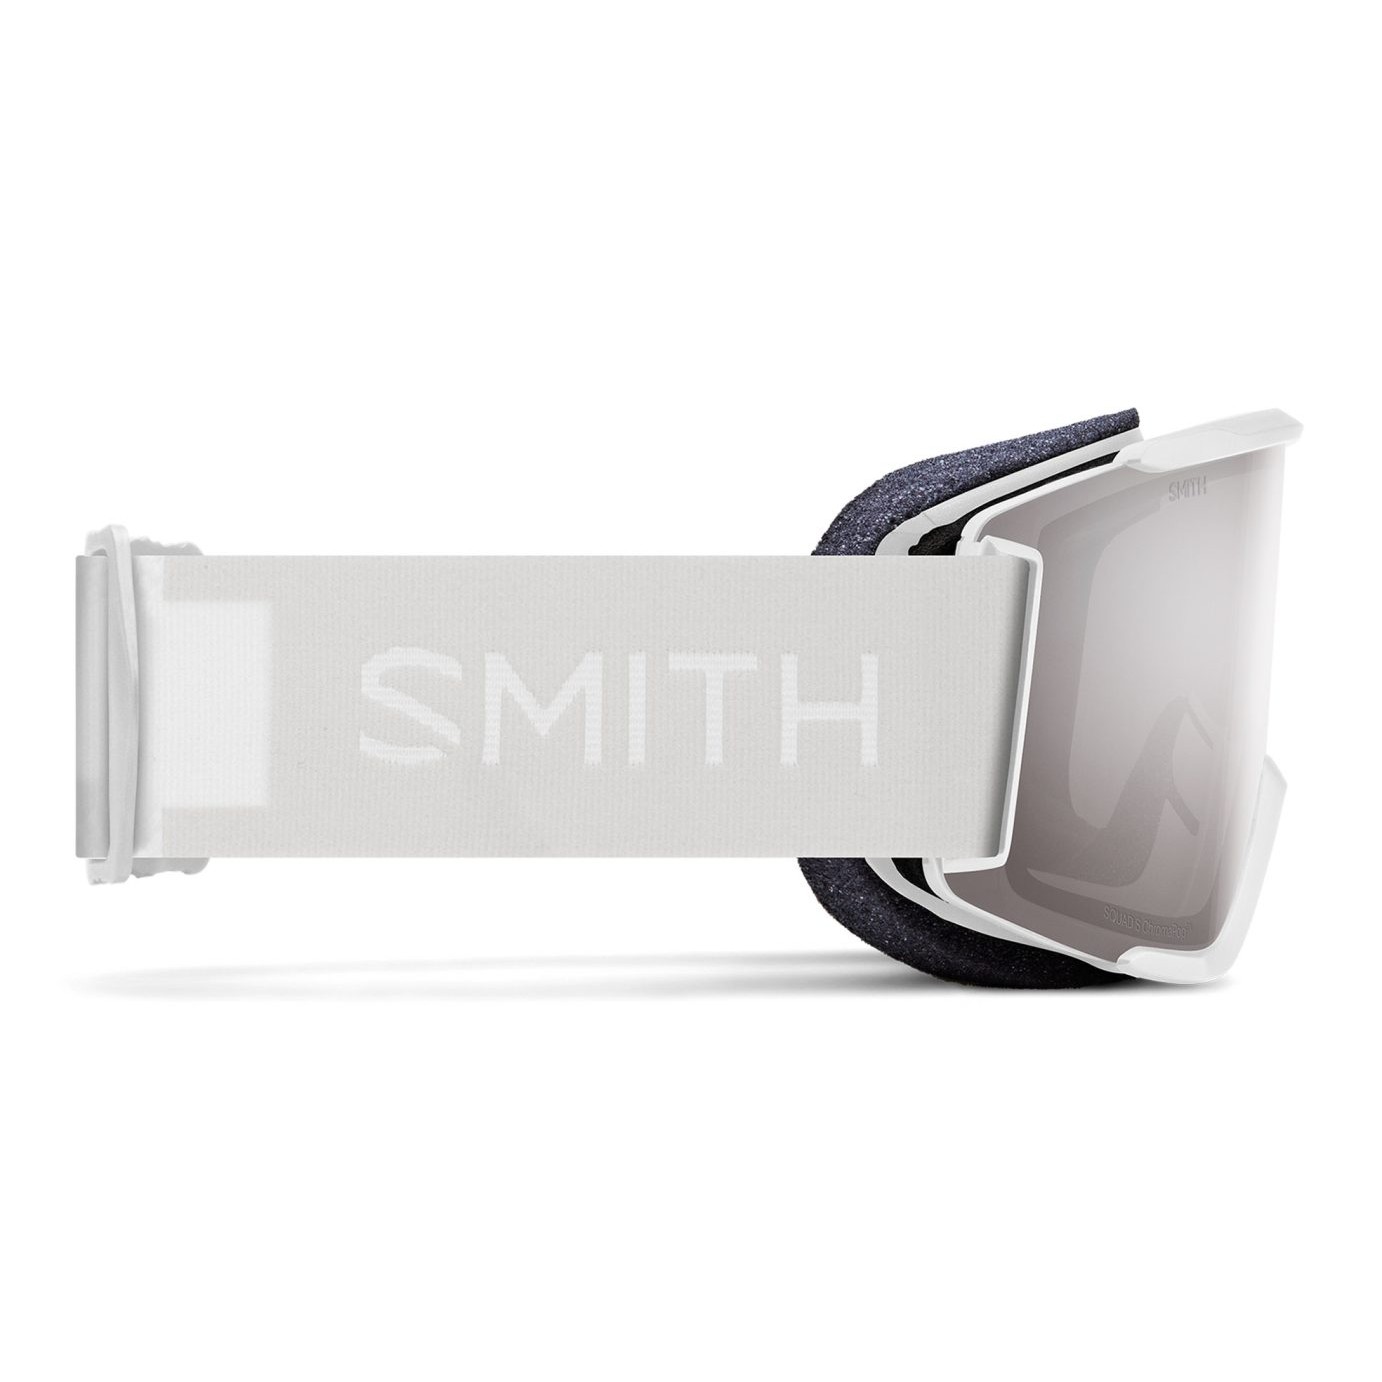 Smith Squad S Snowboard/Ski Goggles